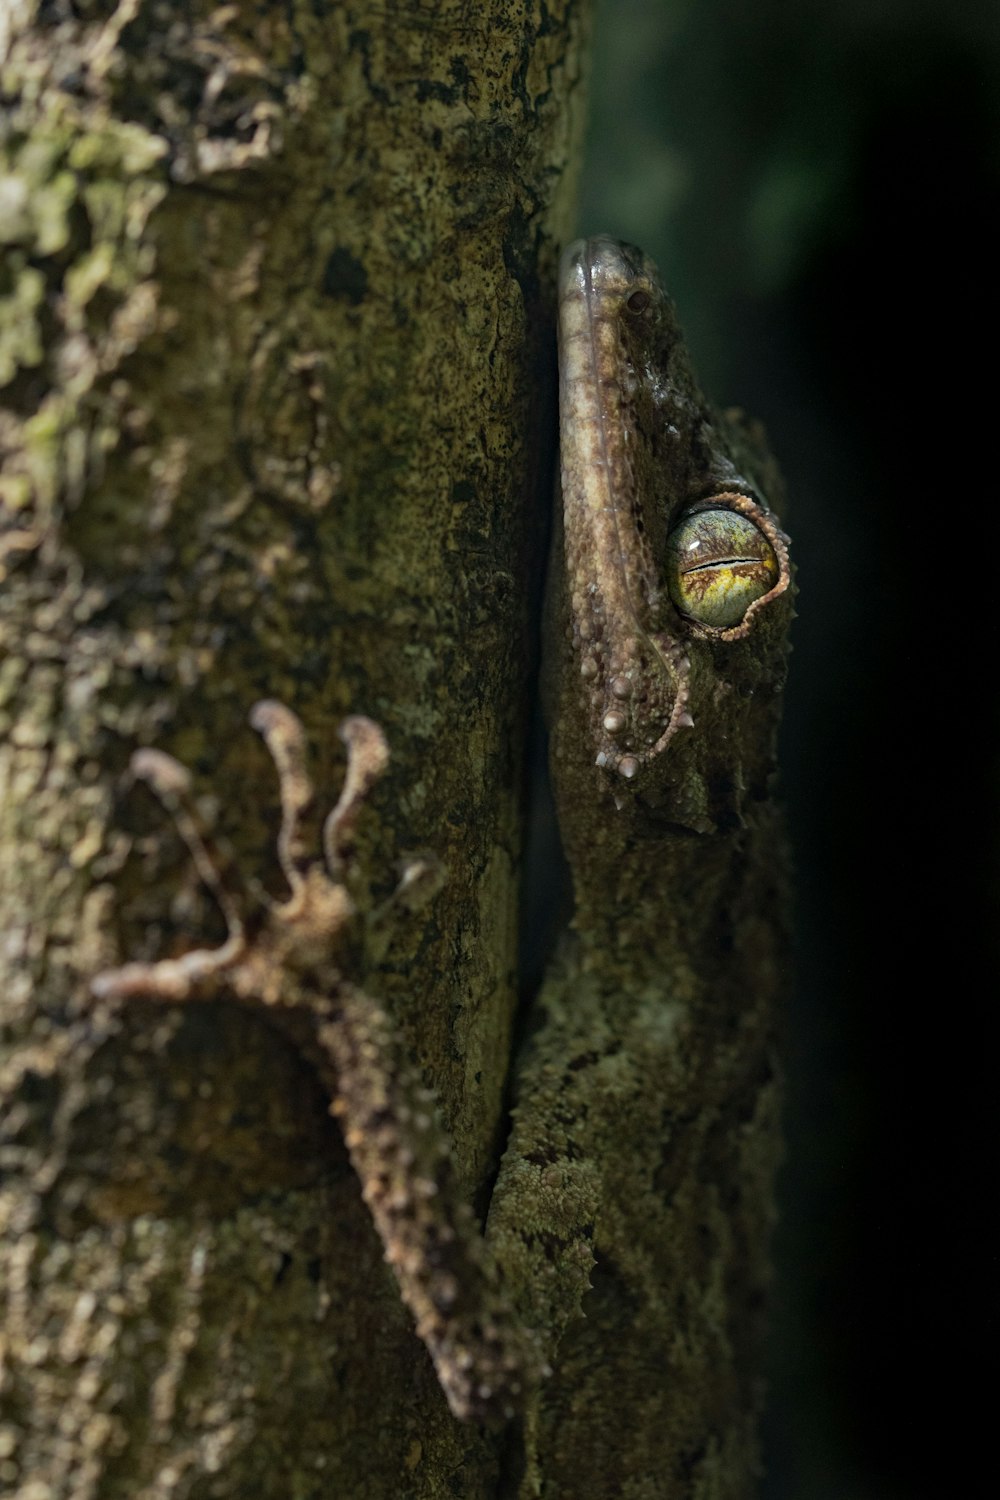 lagarto marrón y blanco en la rama marrón del árbol